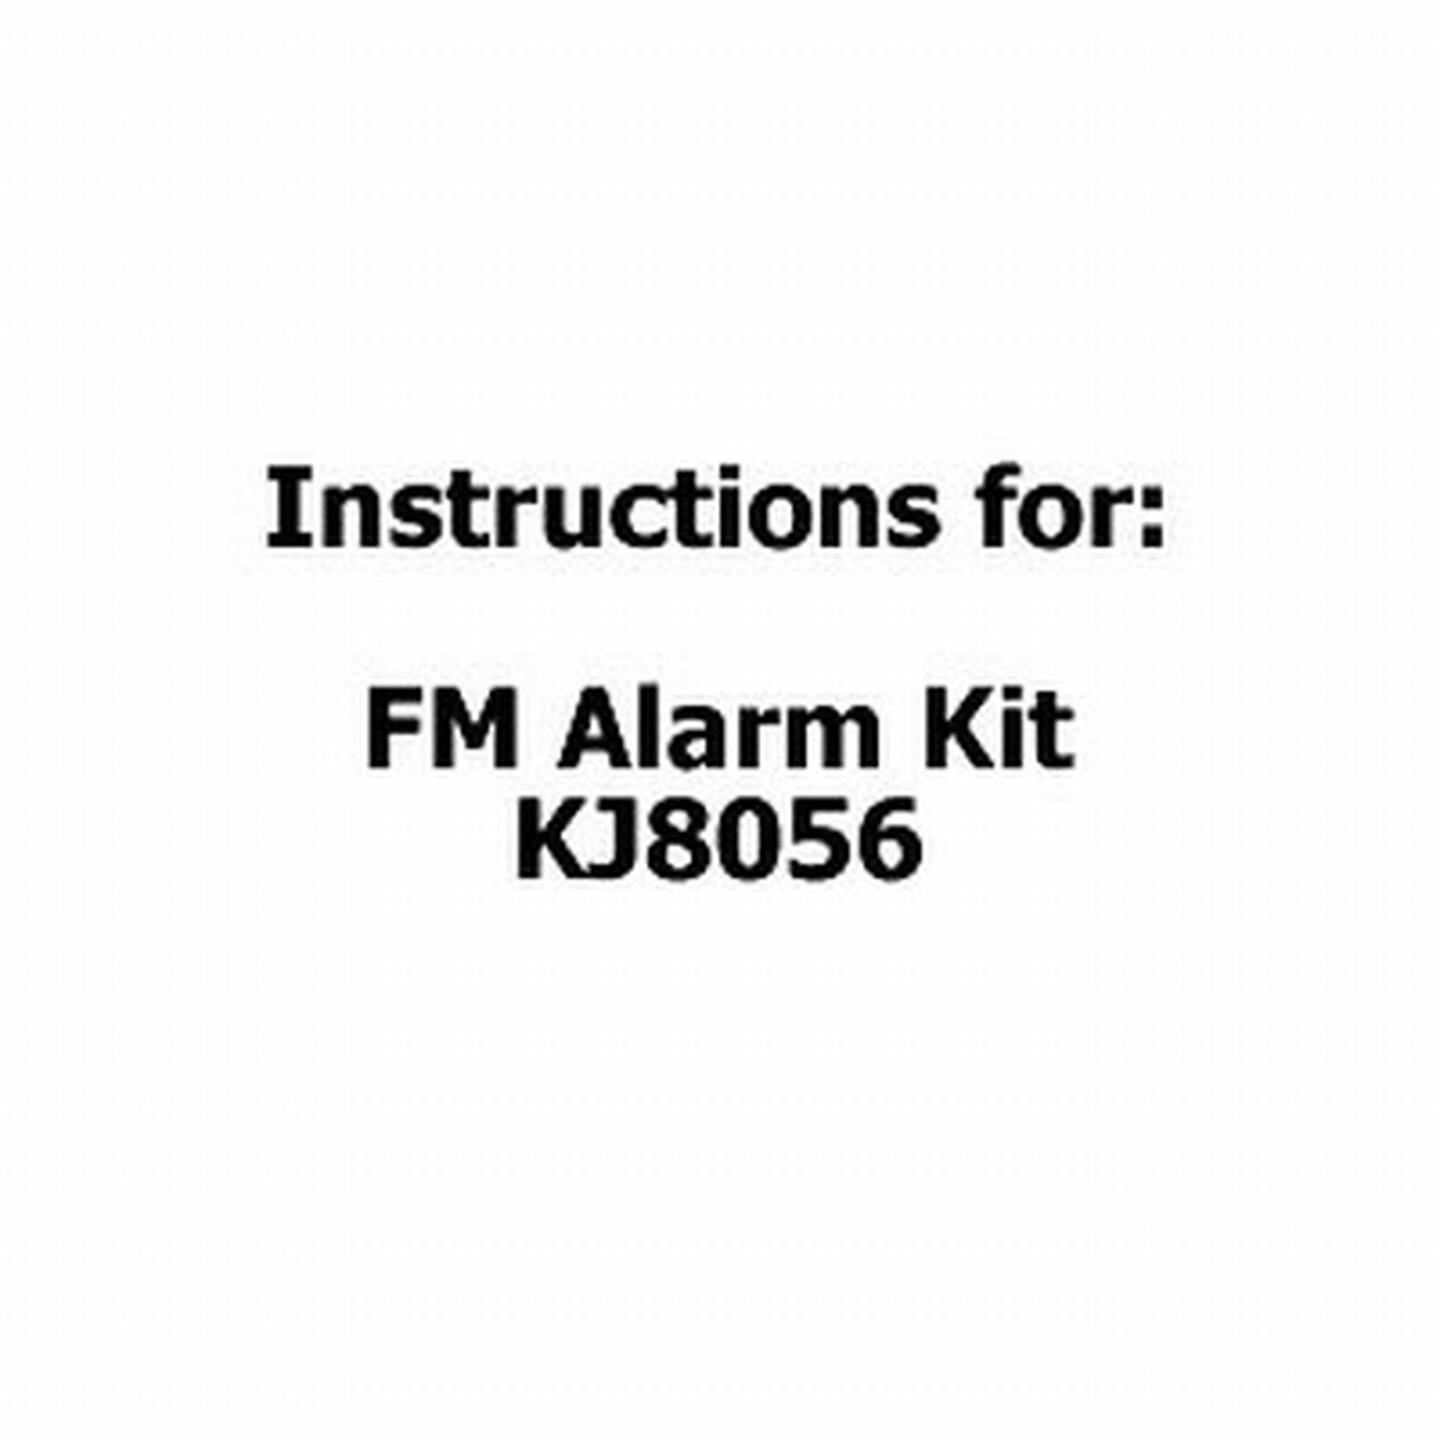 Instructions For FM Alarm Kit KJ8056